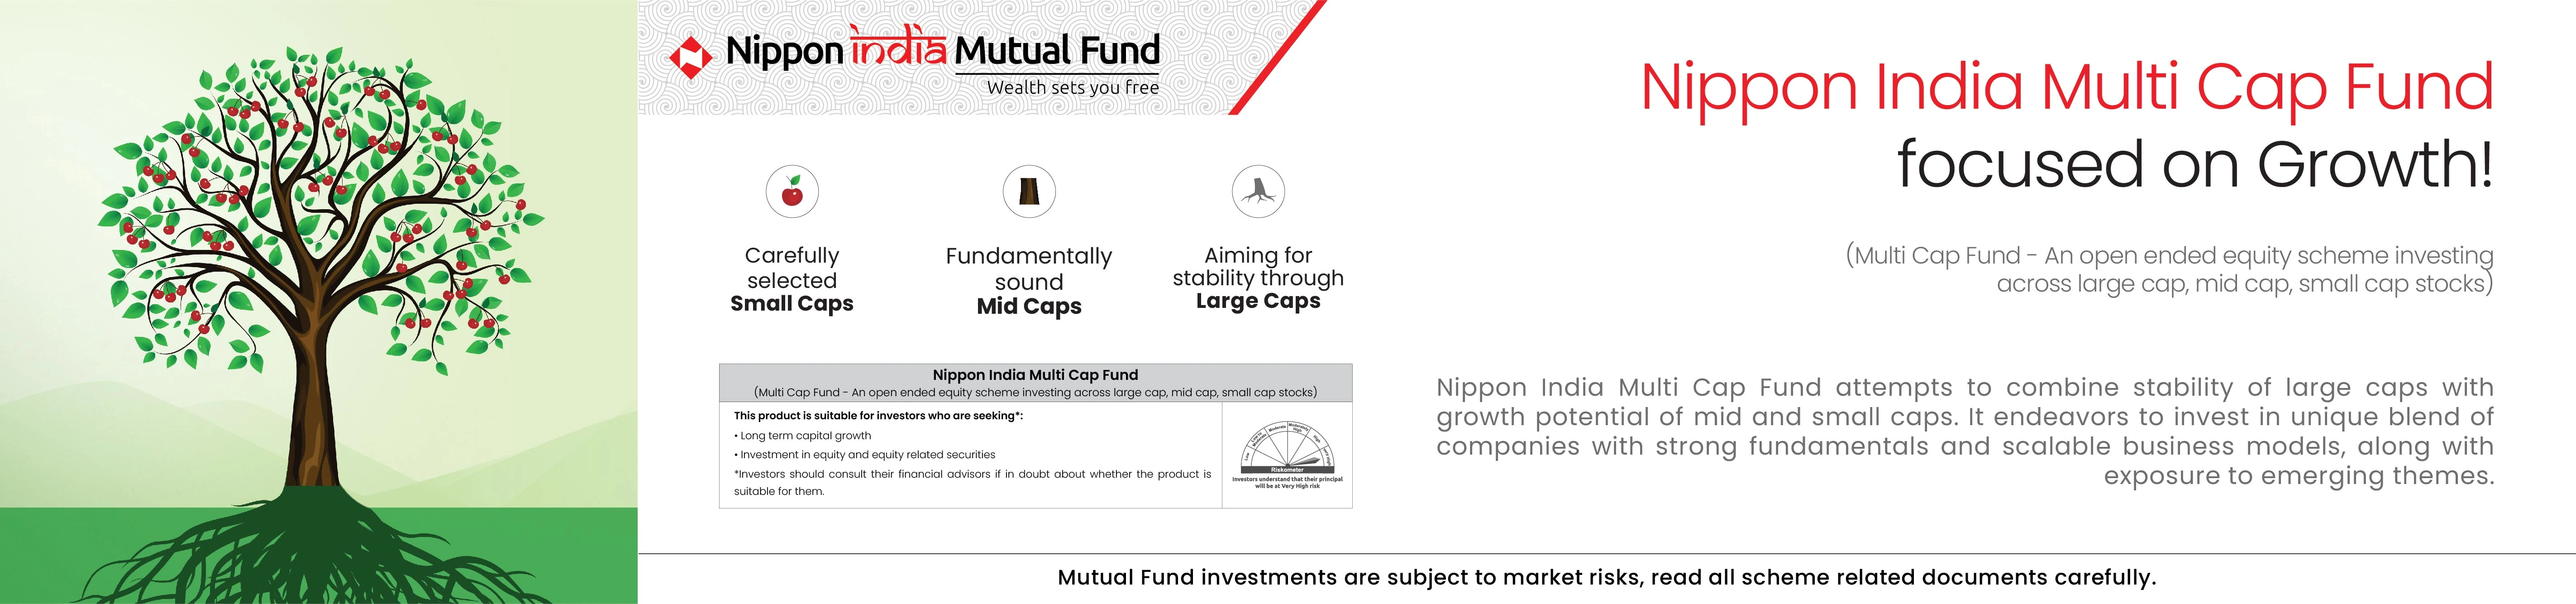 Nippon India Multi Cap Fund